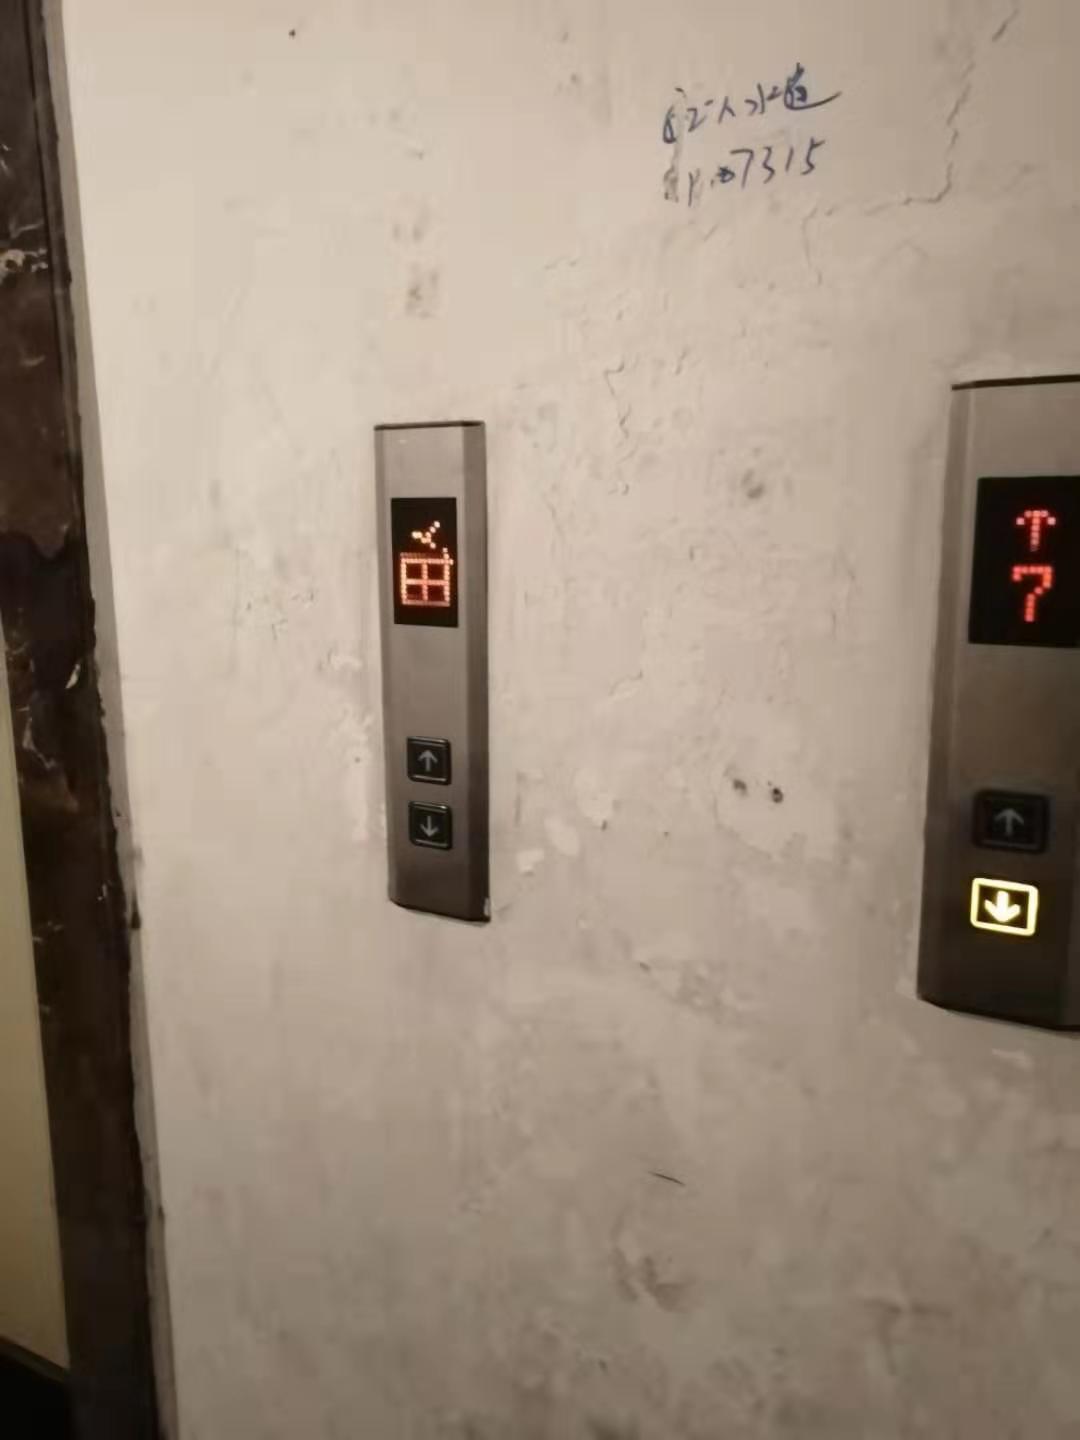 电子正街怡兴大厦供暖不达标电梯故障长时间不维修